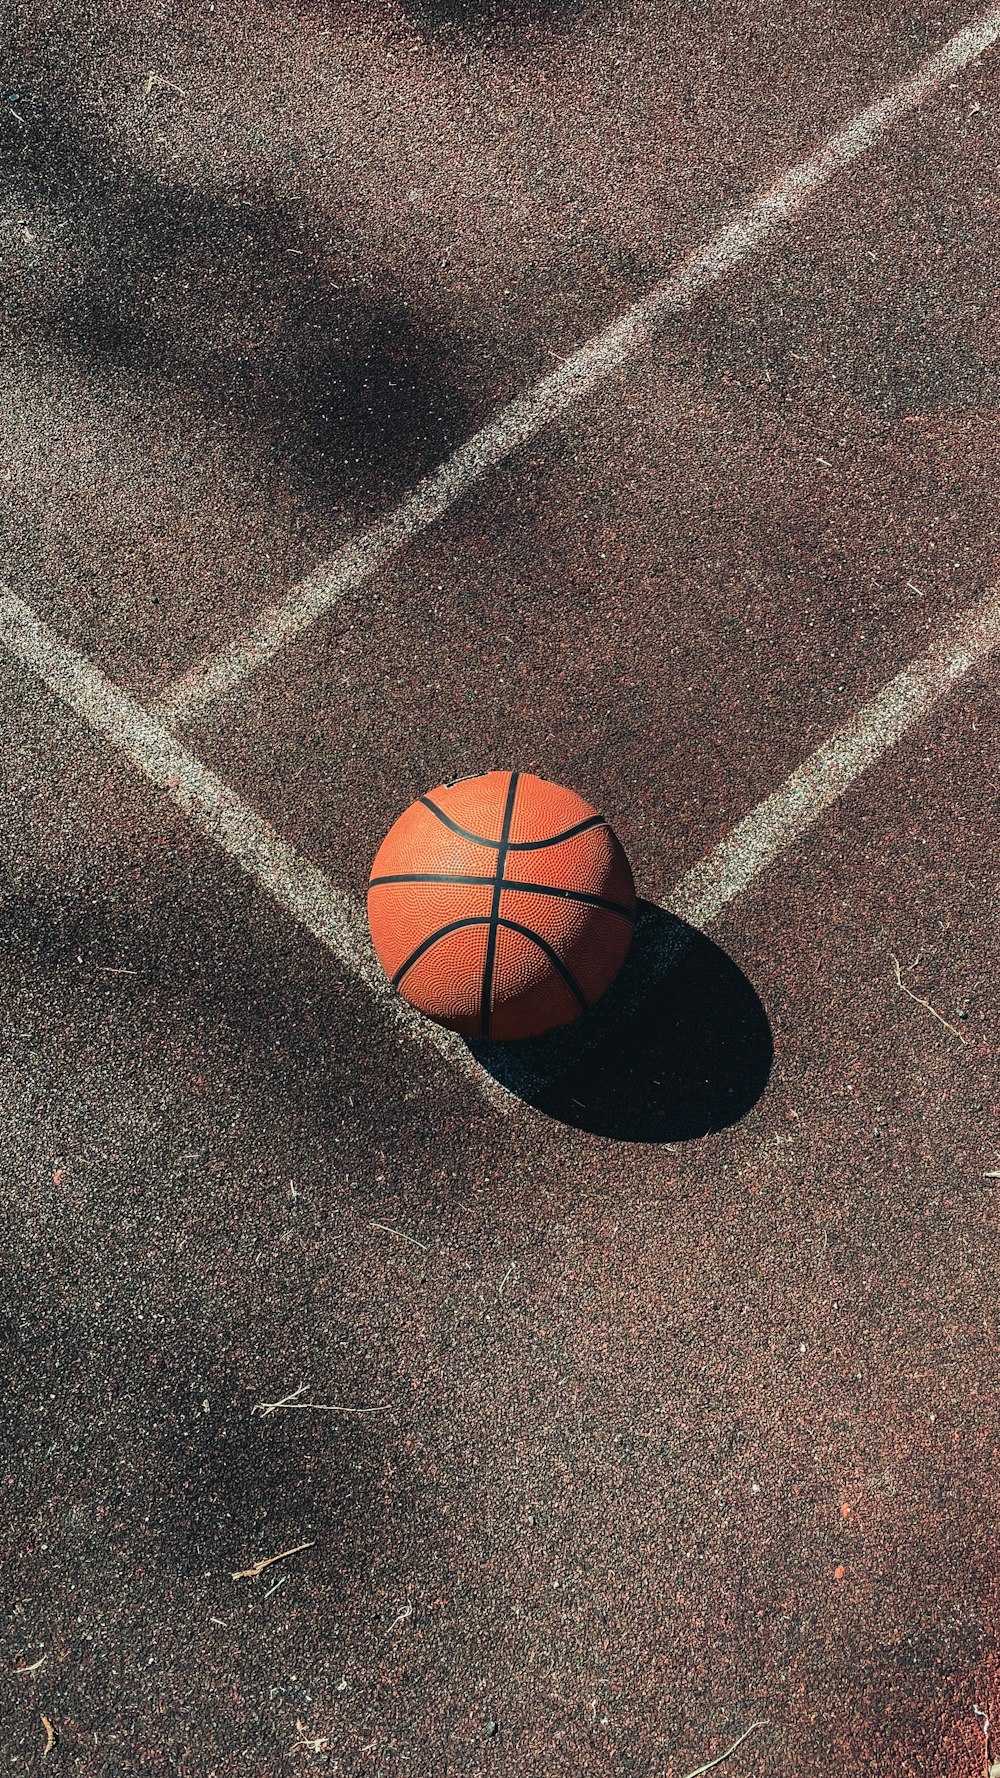 Baloncesto marrón sobre suelo de hormigón gris